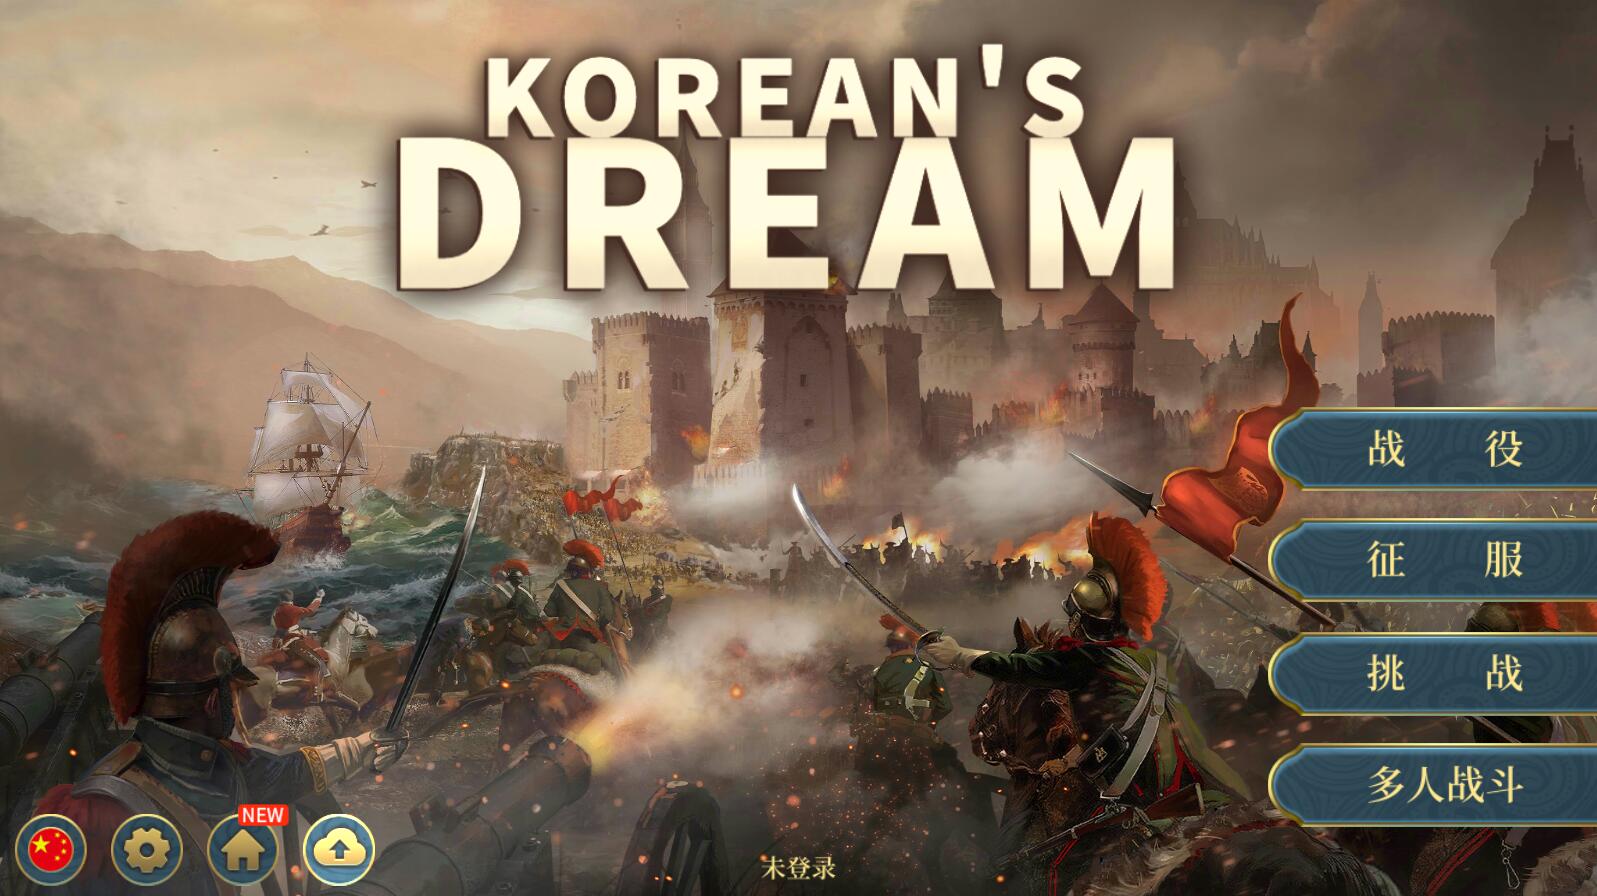 欧陆战争6韩国的梦想 中文内购版 安卓战棋SLG游戏-爱生活游戏